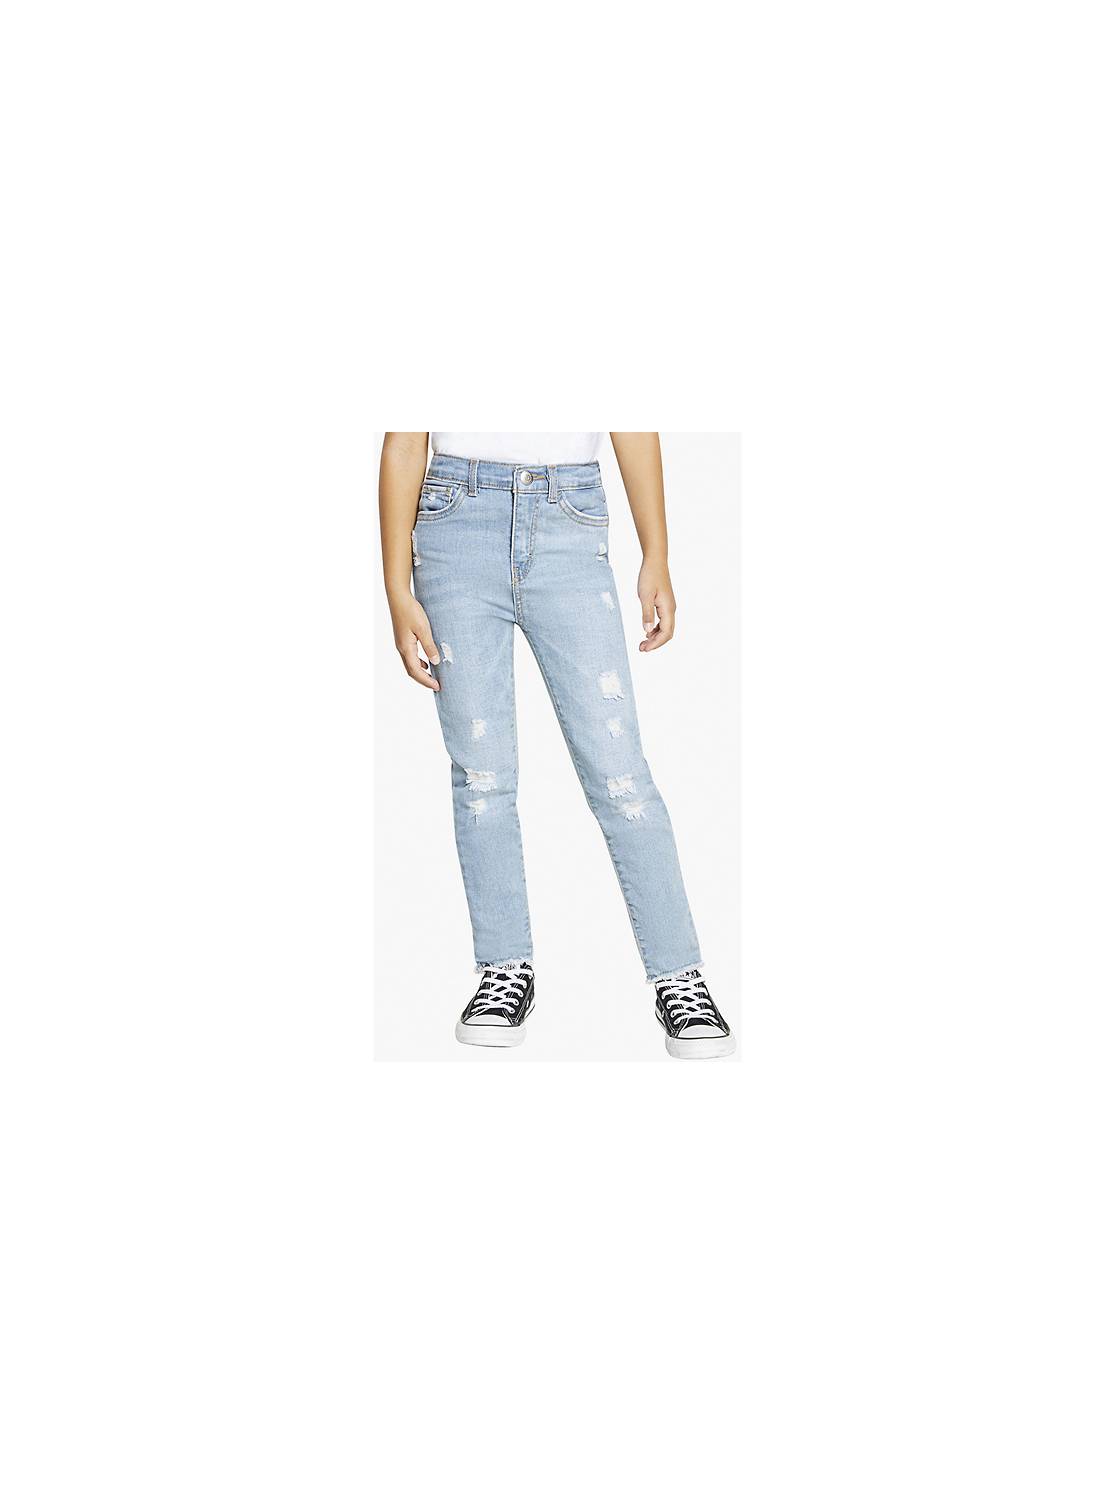 Girls Jeans & Leggings - Shop All Kids Girls' Skinny & More